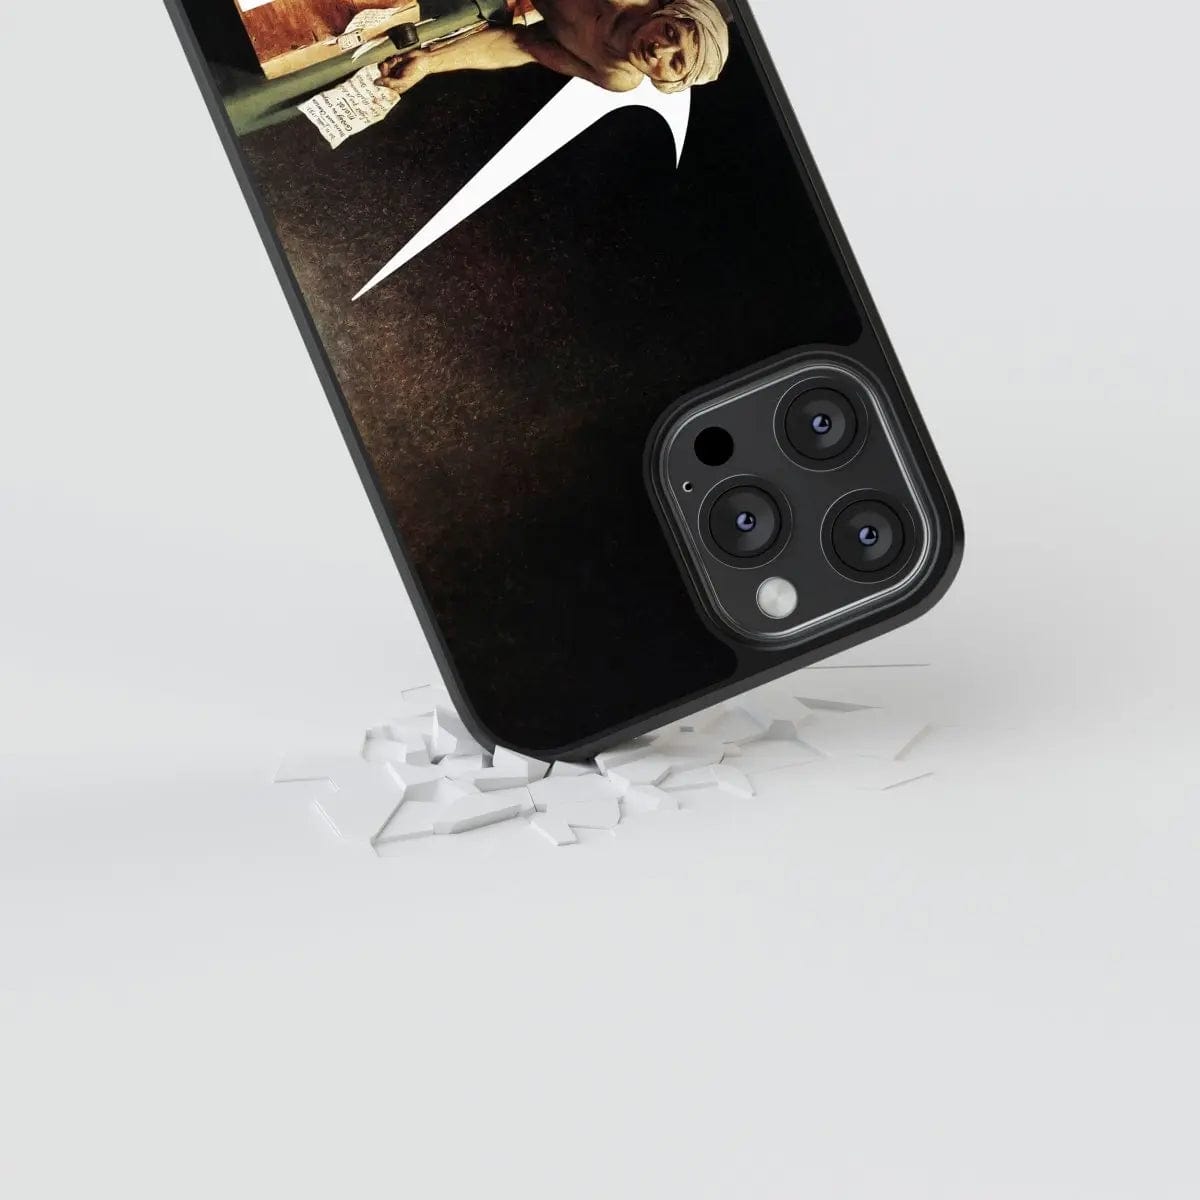 Phone case "Just do it" - Artcase